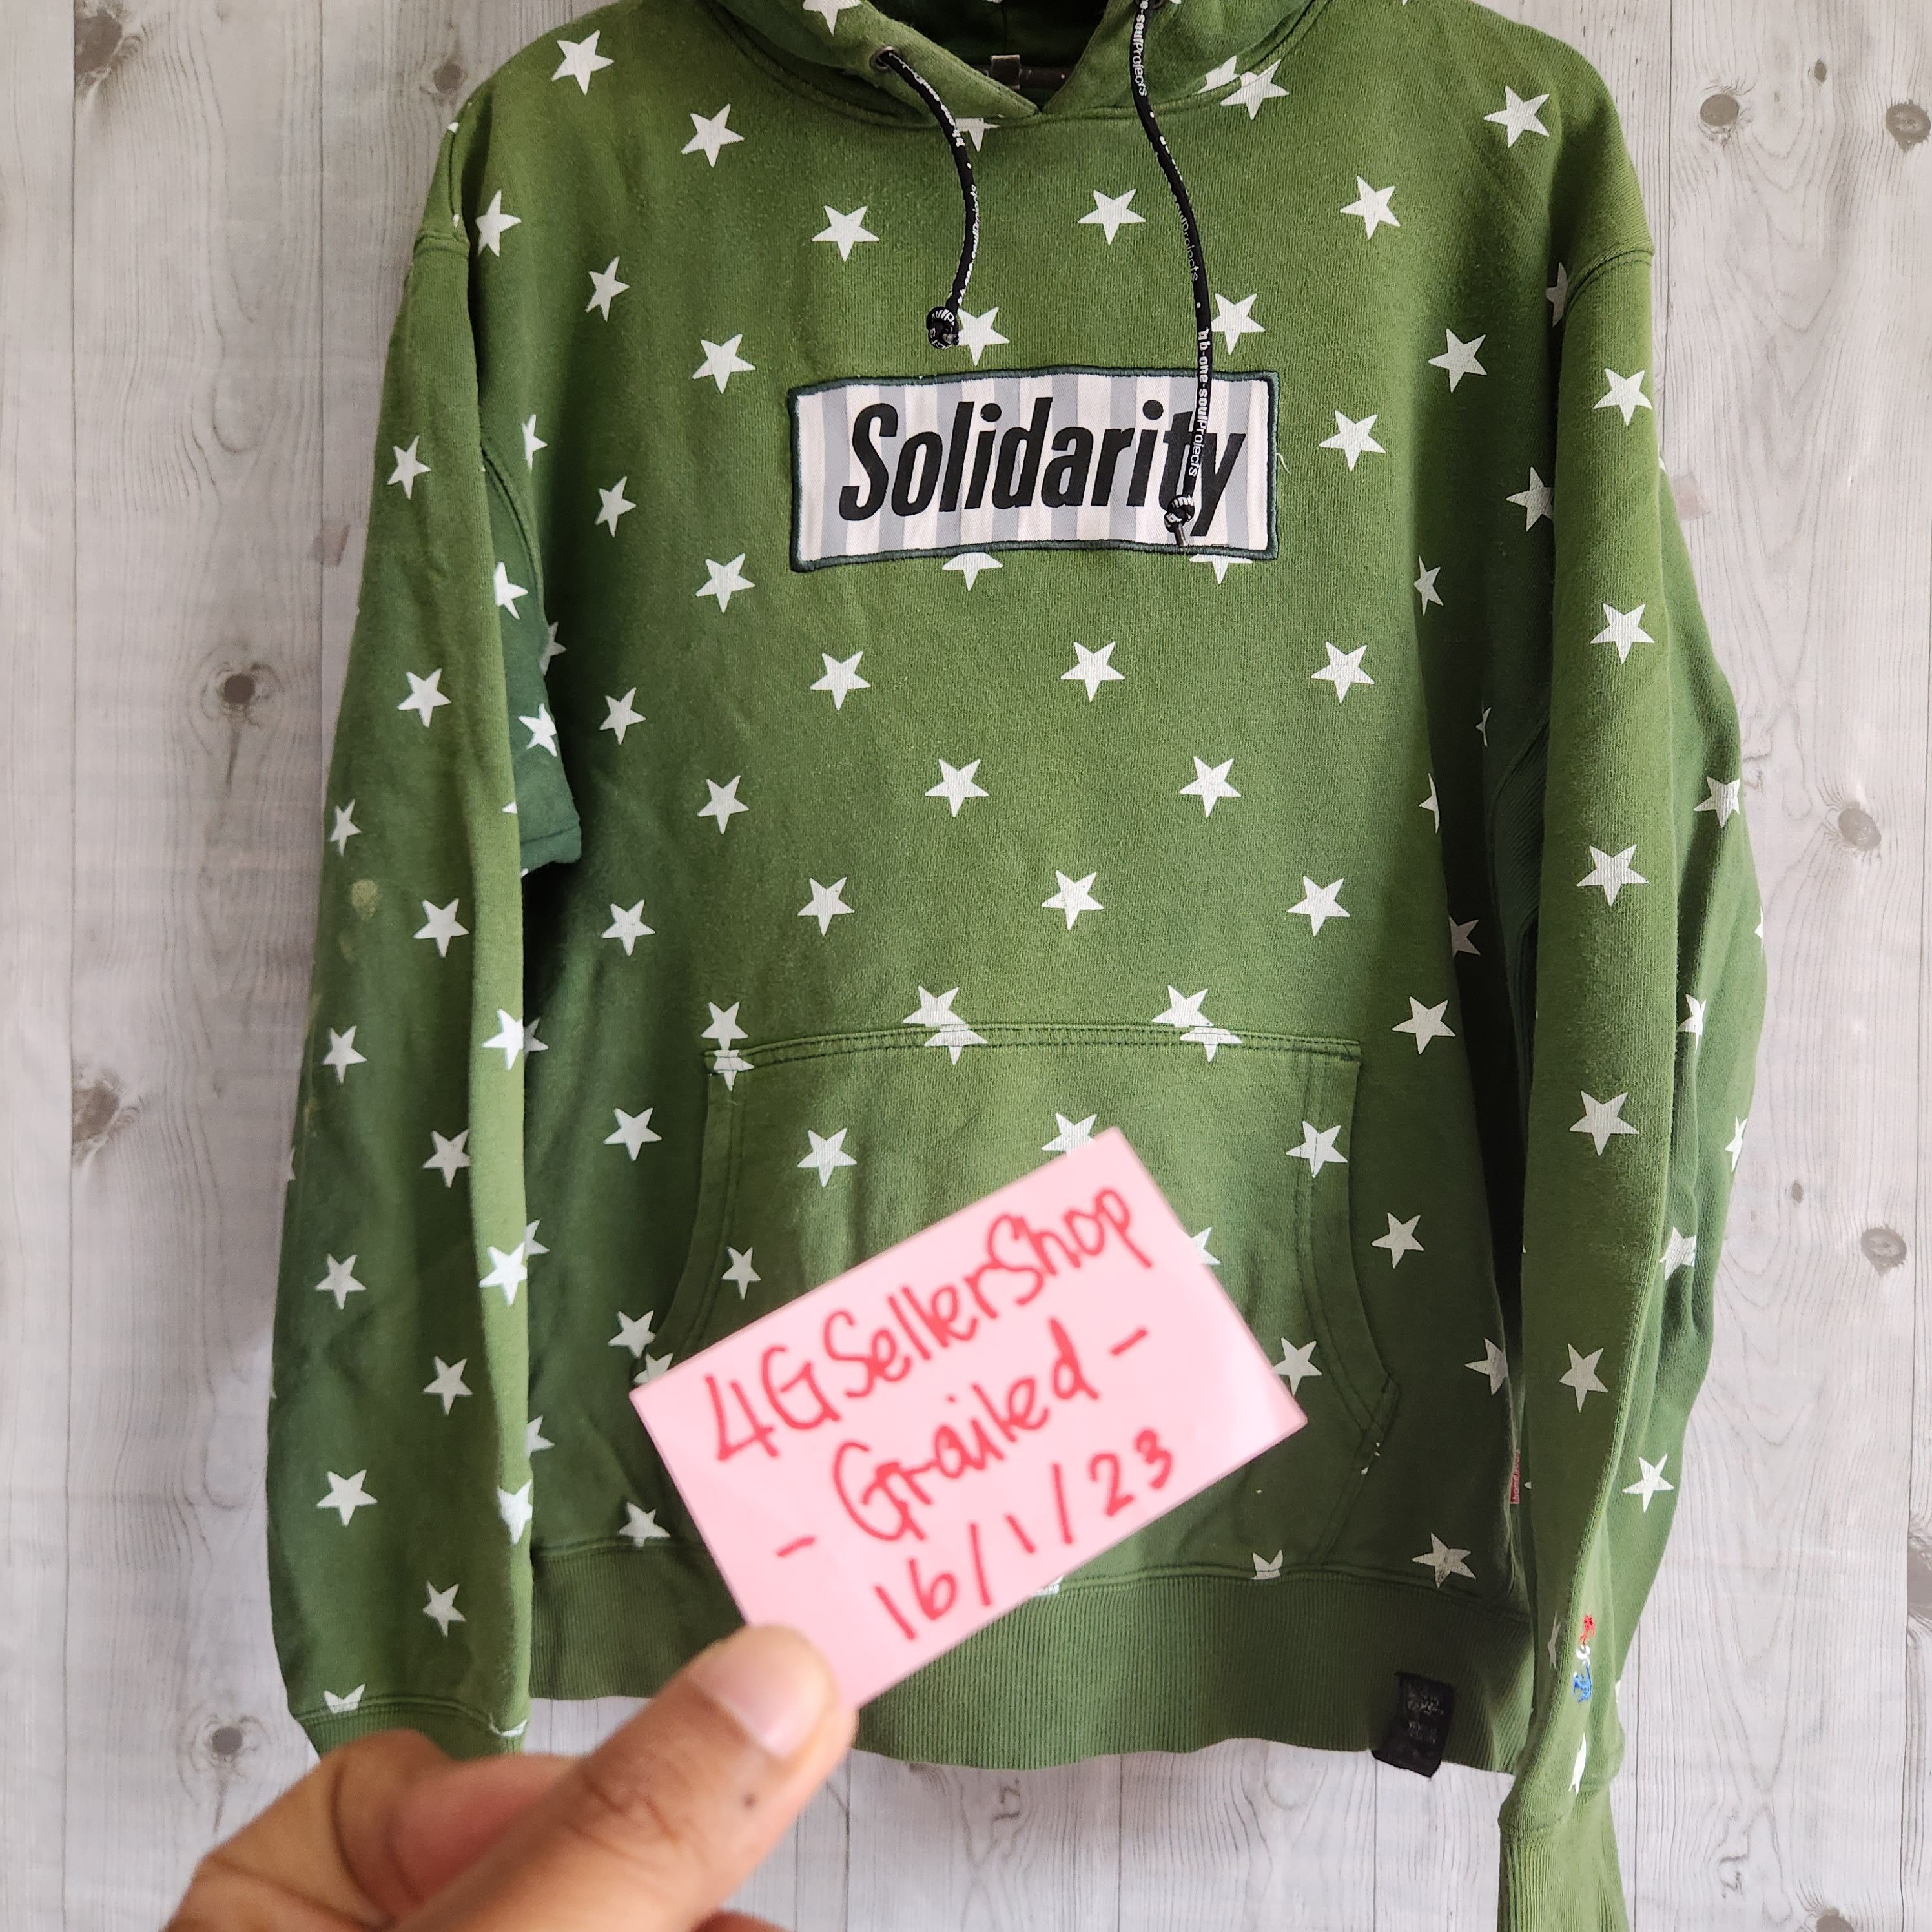 Streetwear - B One Soul Solidarity Full Printed Stars Skategang Hoodie - 18